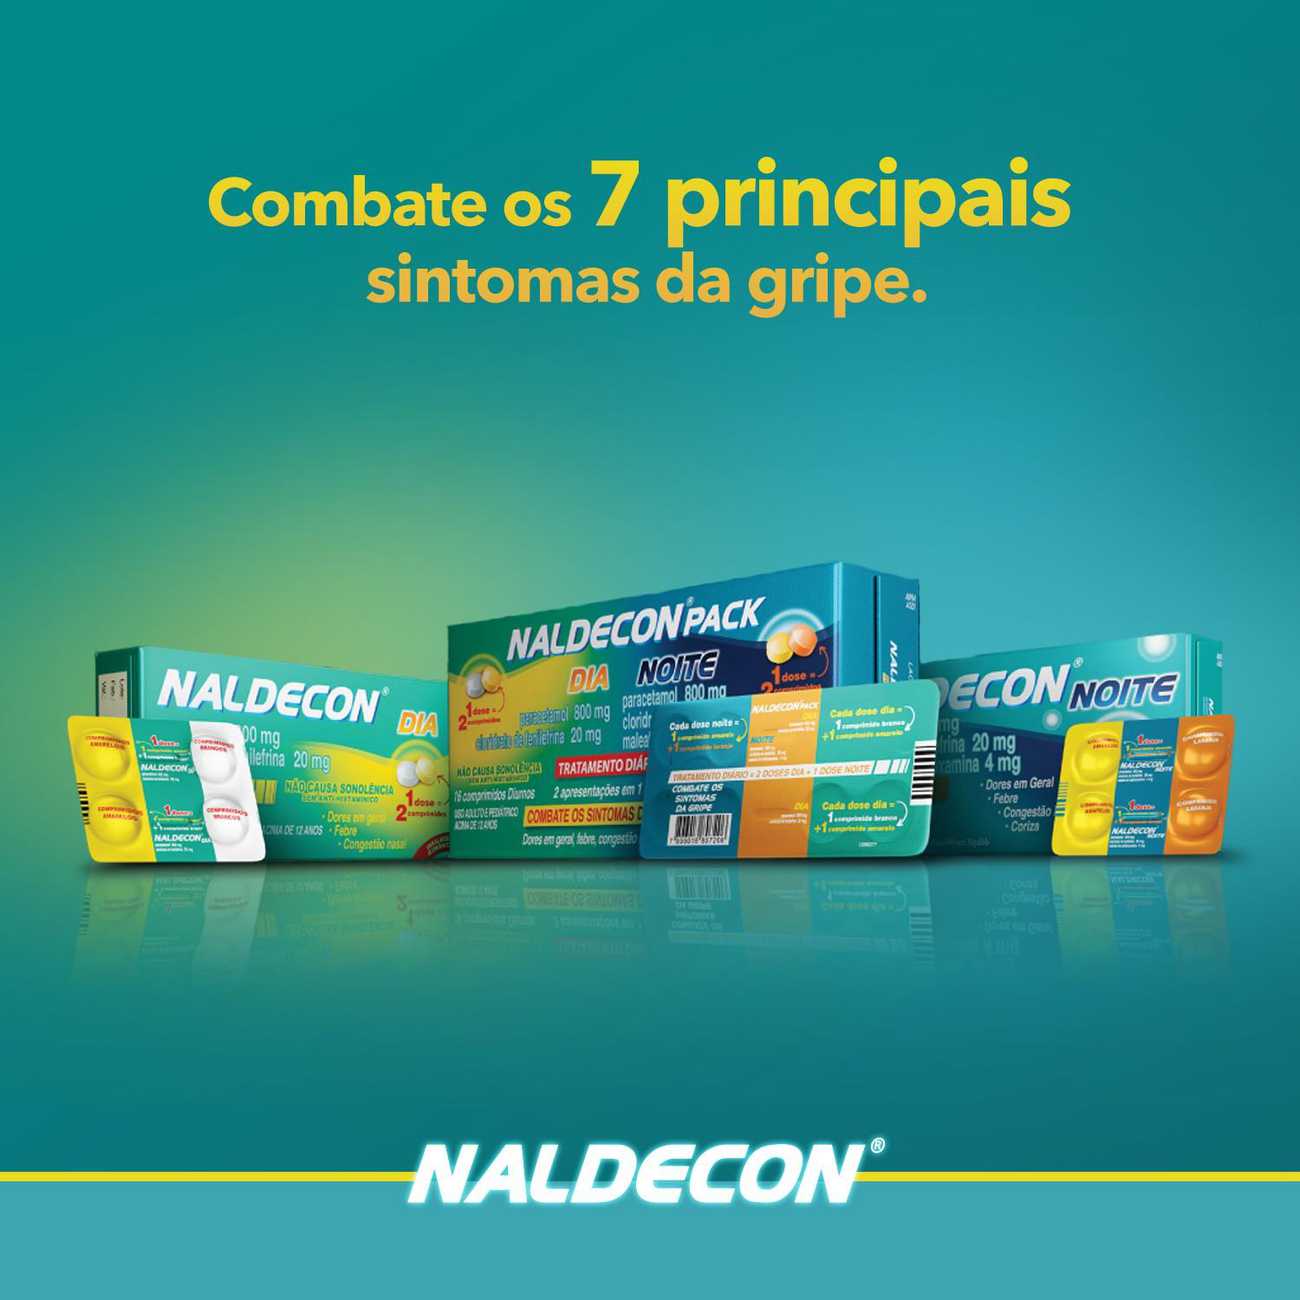 Antigripal Naldecon Noite - Blster 4 Comprimidos